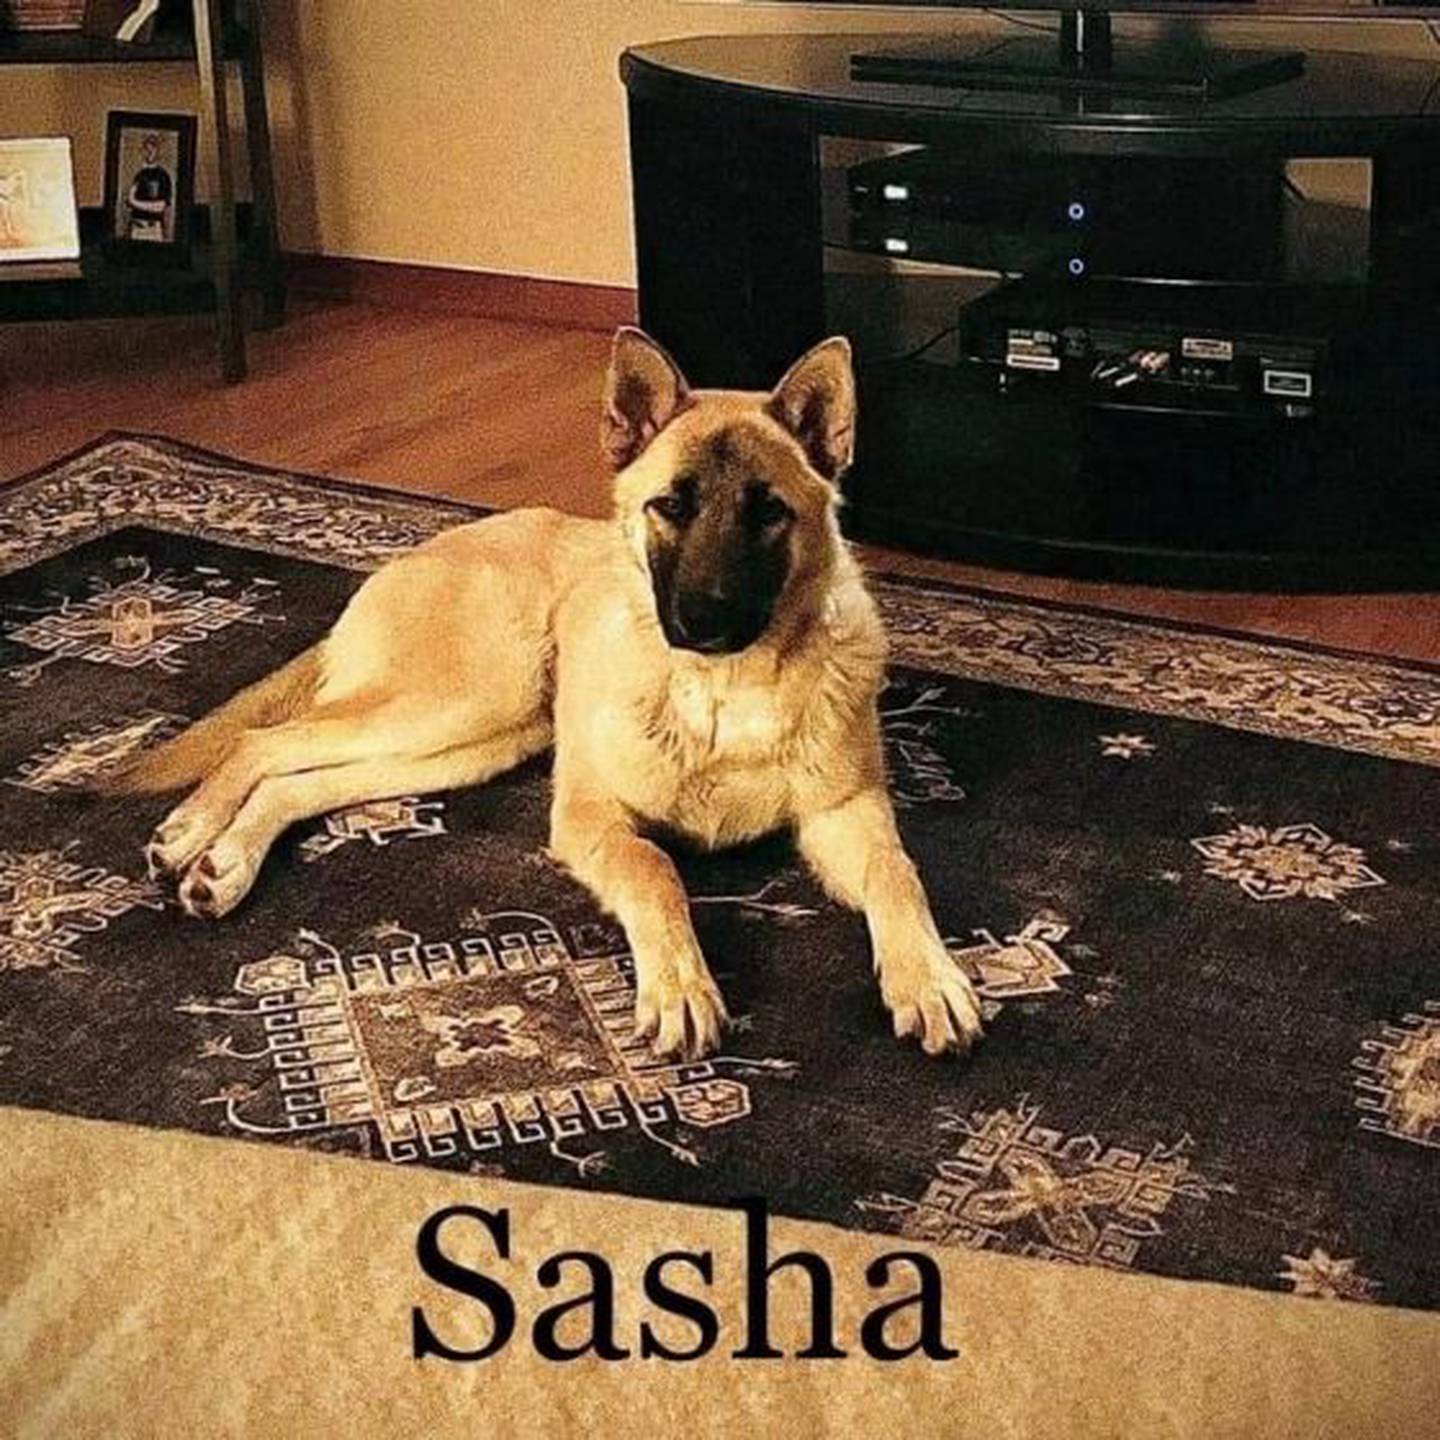 Sasha est un adorable mélange de bergers de deux ans.  Elle a récemment subi une opération au cou pour une grosseur, mais elle n'agit pas comme ça.  Sasha a besoin d'un foyer actif où elle peut courir et jouer.  Les enfants à la maison doivent être âgés d'au moins 12 ans.  Sasha aime courir et jouer.  Elle accepte les chiens et aime les gens.  Elle apprend 